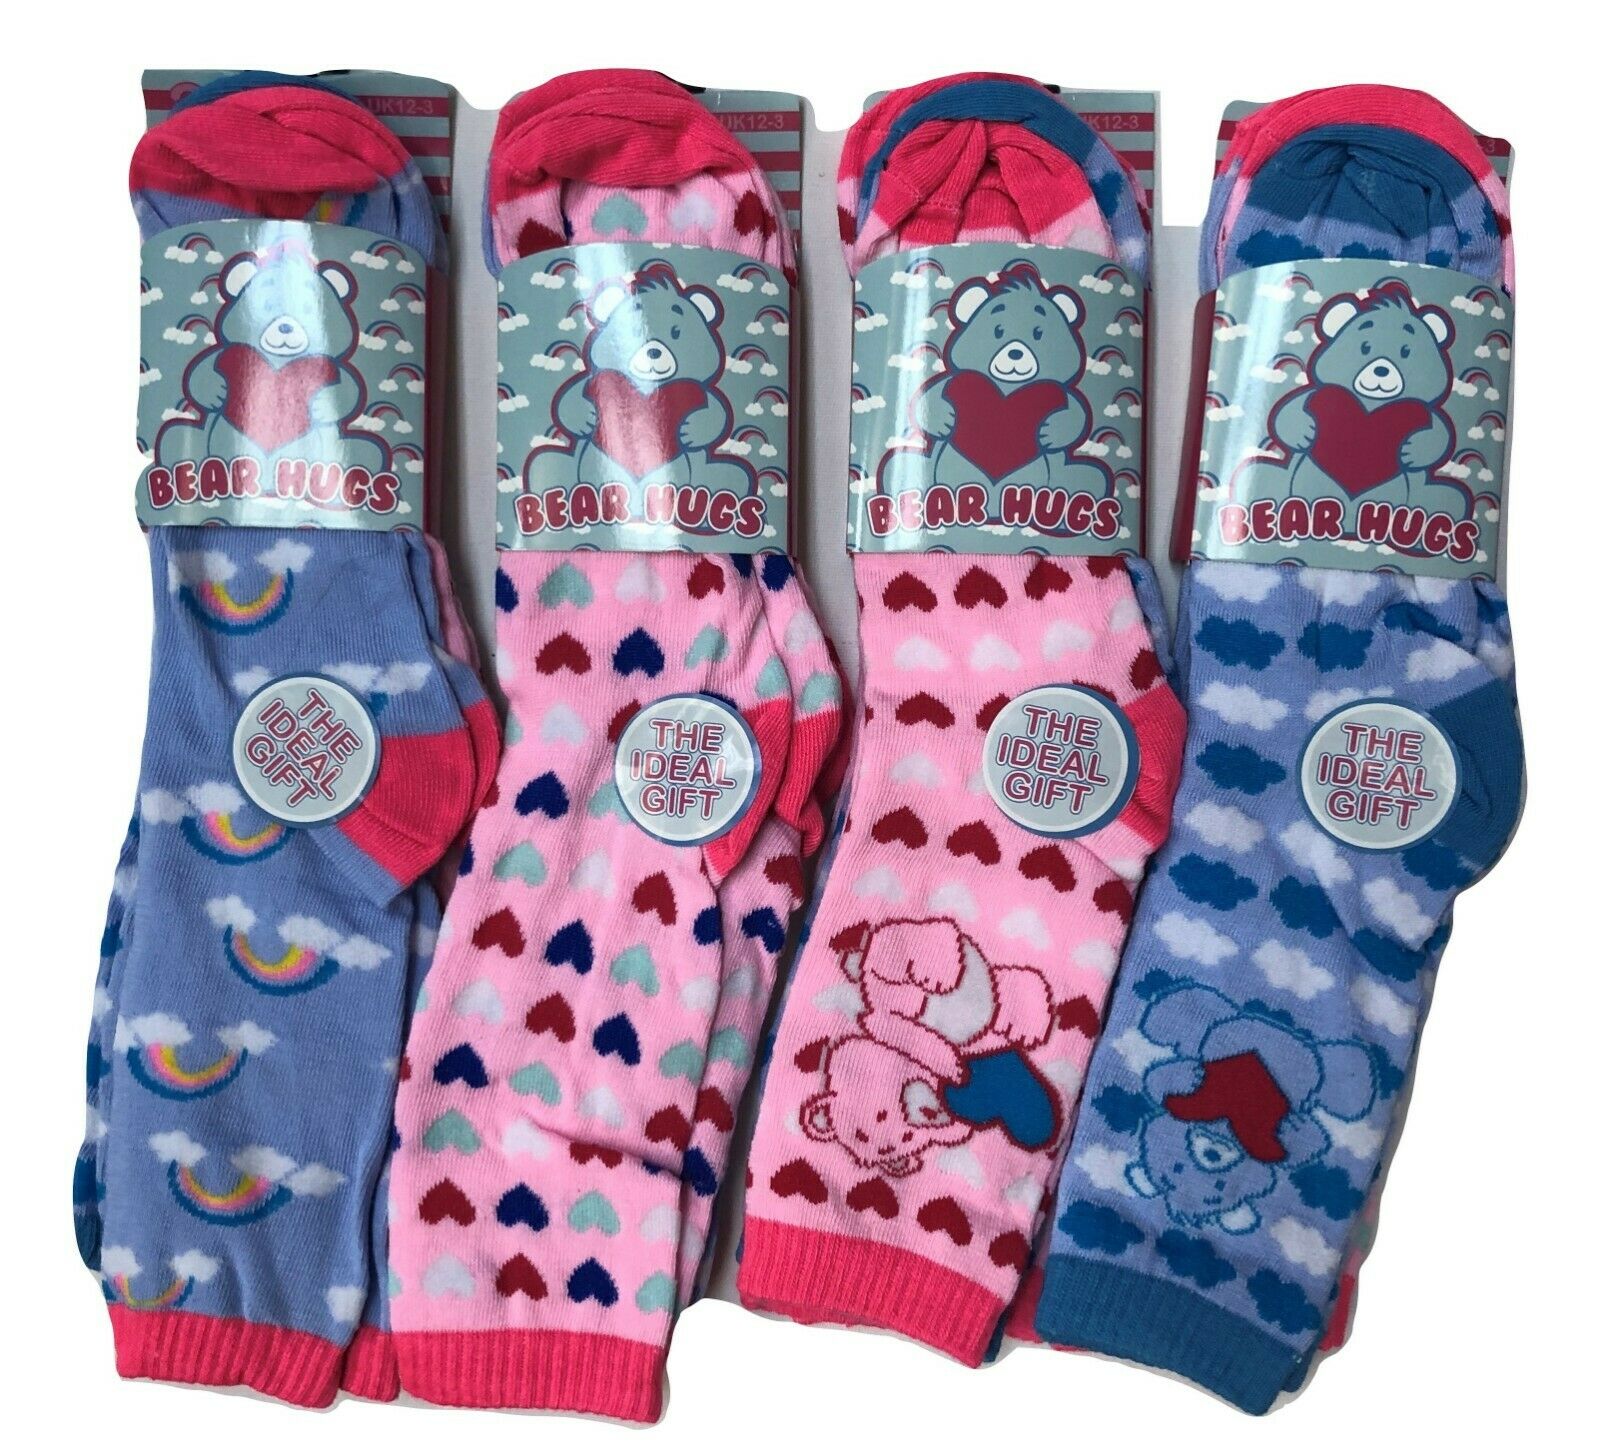 Girls Boys Ankle School Socks 6 Pairs Children Kids All Size Soft Daily Socks Bear Hugs